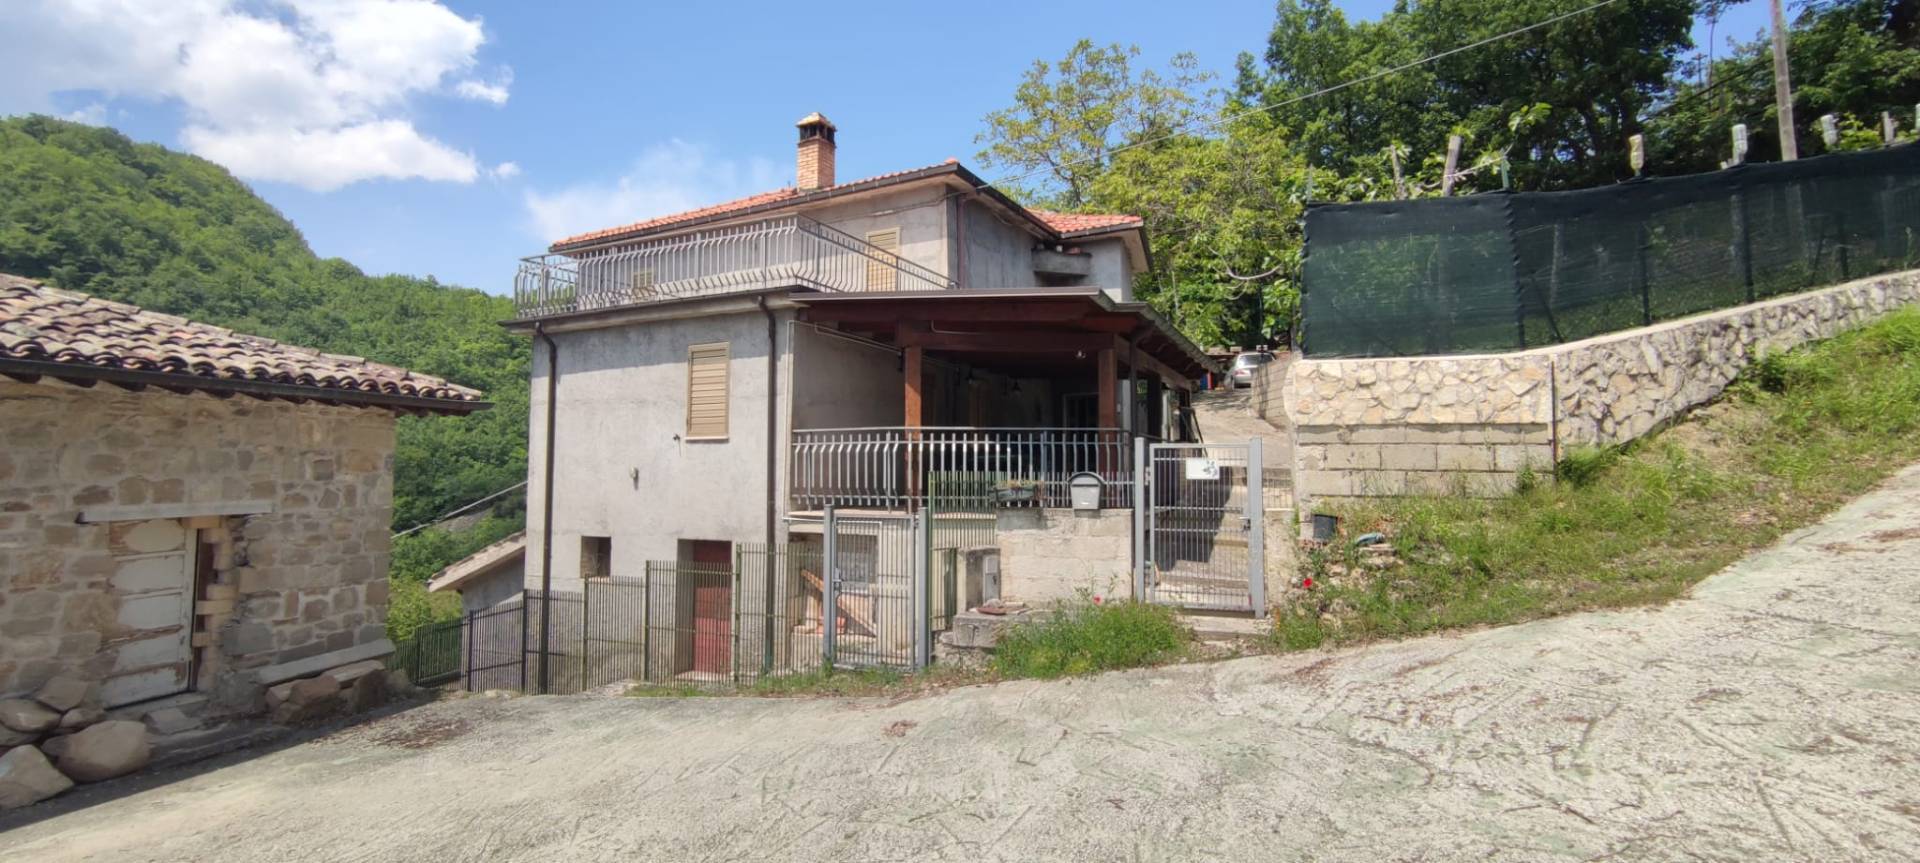 Villa in vendita a Ascoli Piceno, 10 locali, zona ra, prezzo € 93.000 | PortaleAgenzieImmobiliari.it